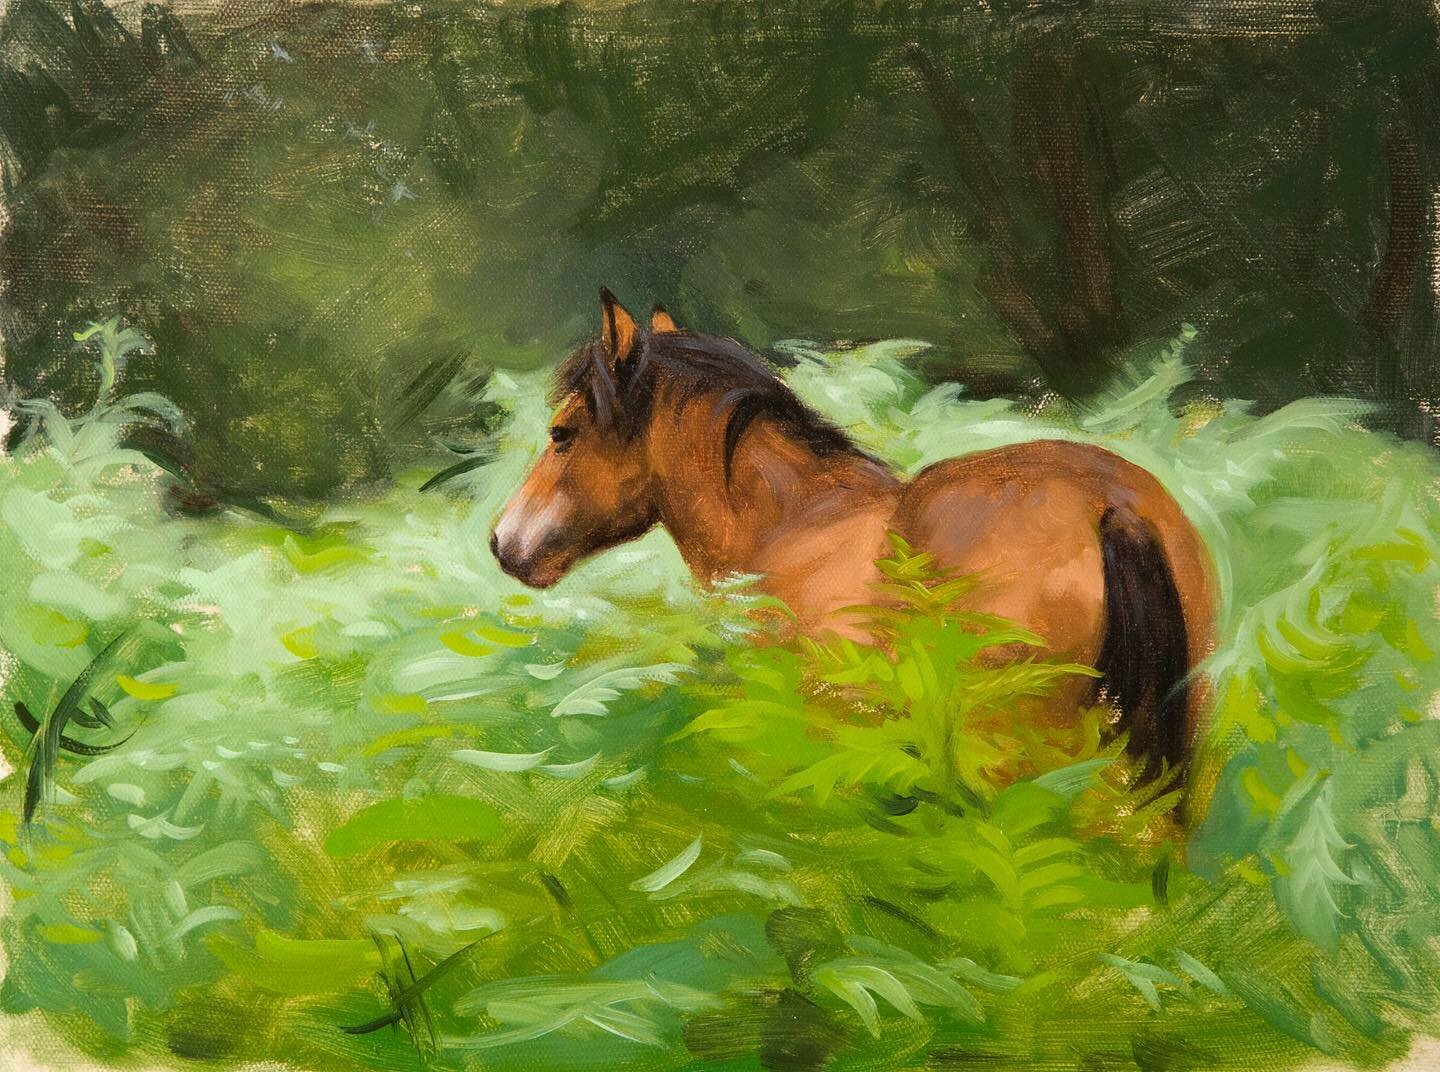 Forest Pony, oil on panel
.
#newforestartist #oilpainter #newforestpony #equestrianart